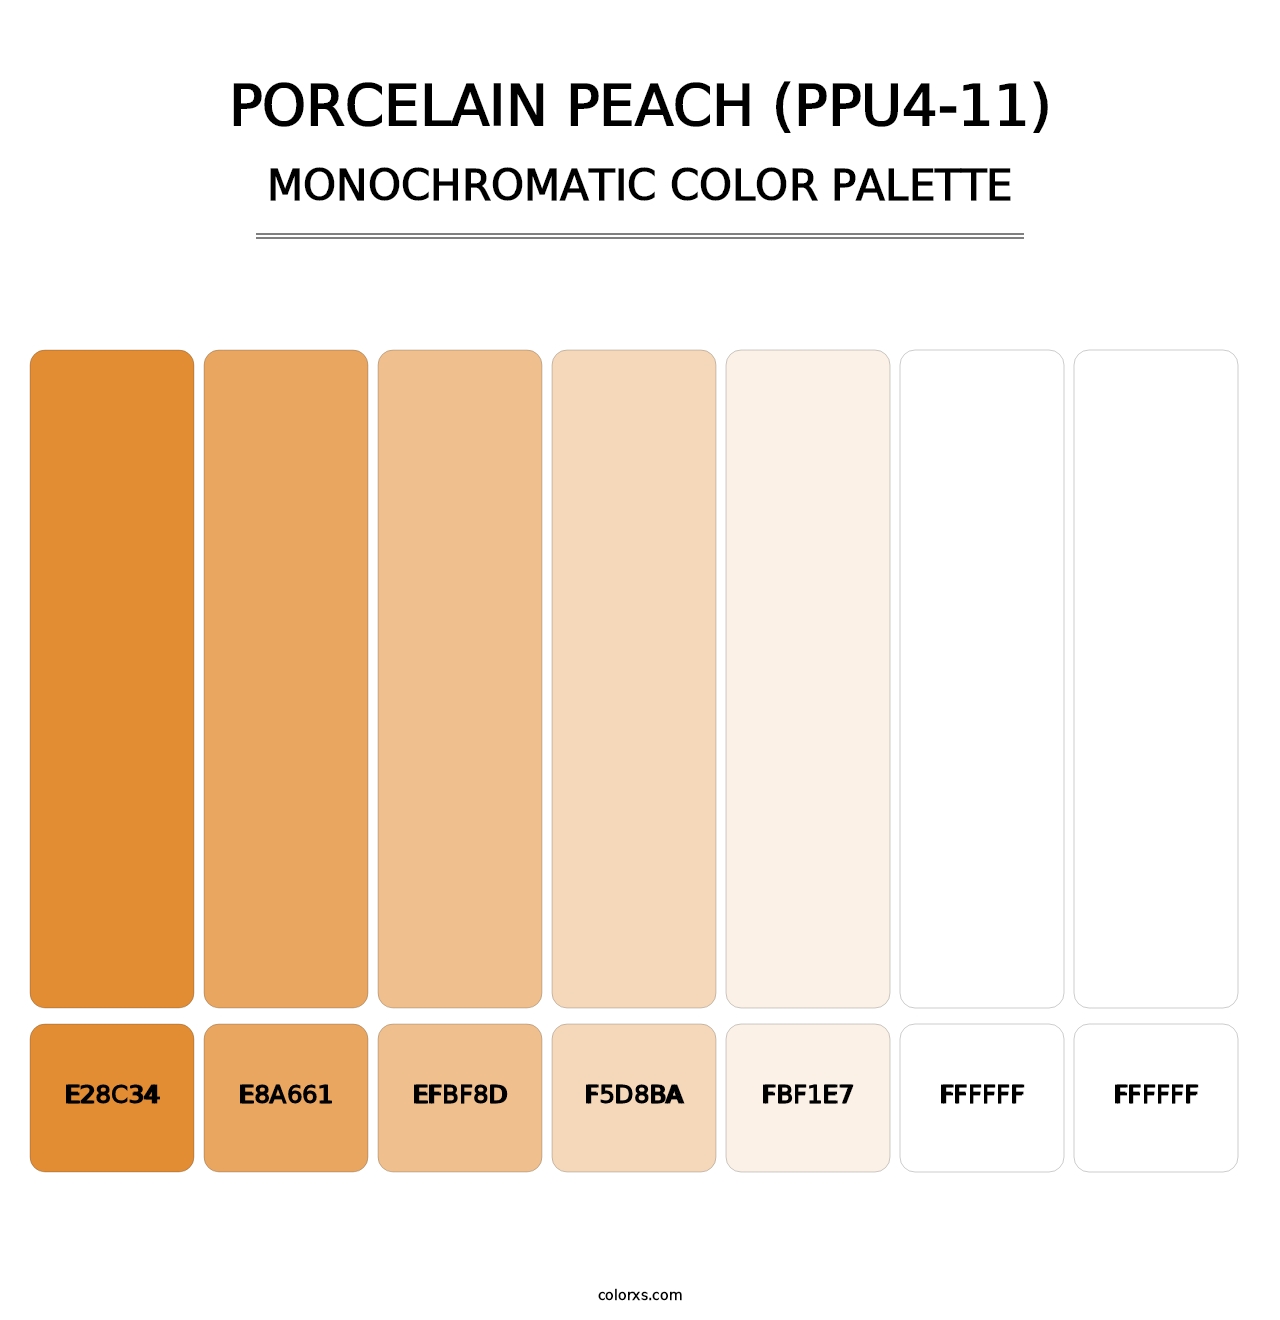 Porcelain Peach (PPU4-11) - Monochromatic Color Palette